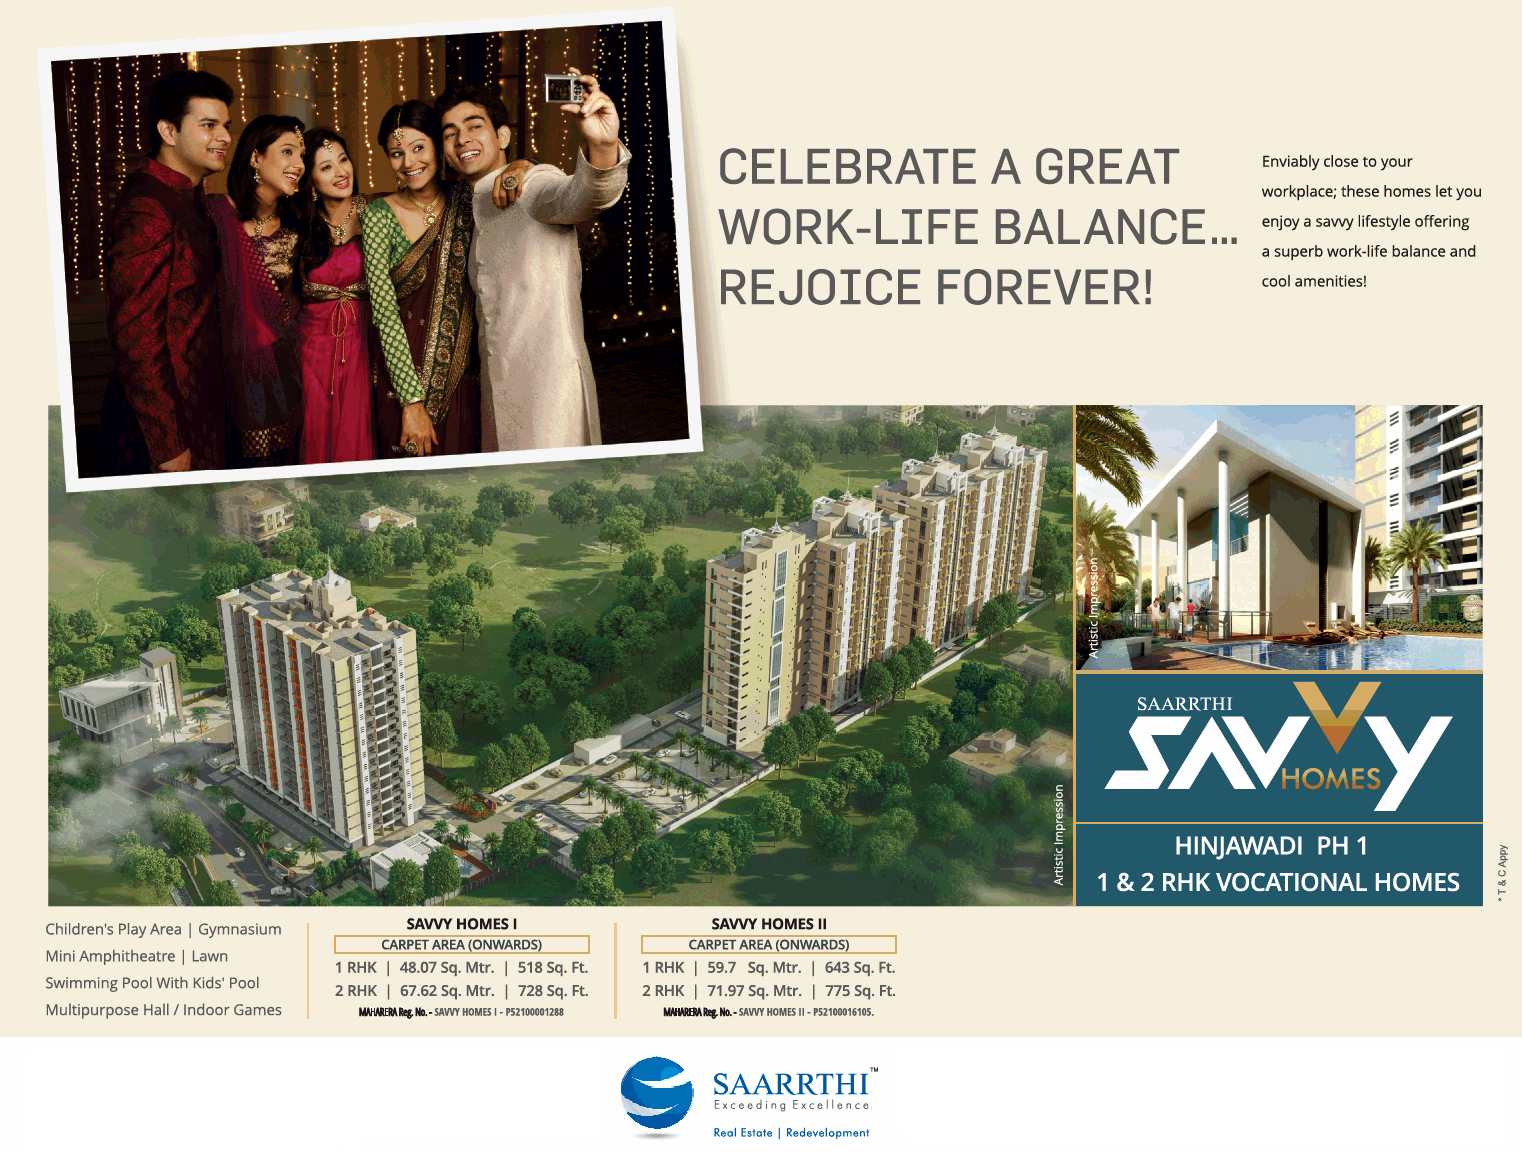 Celebrate a great work life balance at Saarrthi Savvy Home in Hinjawadi, Pune